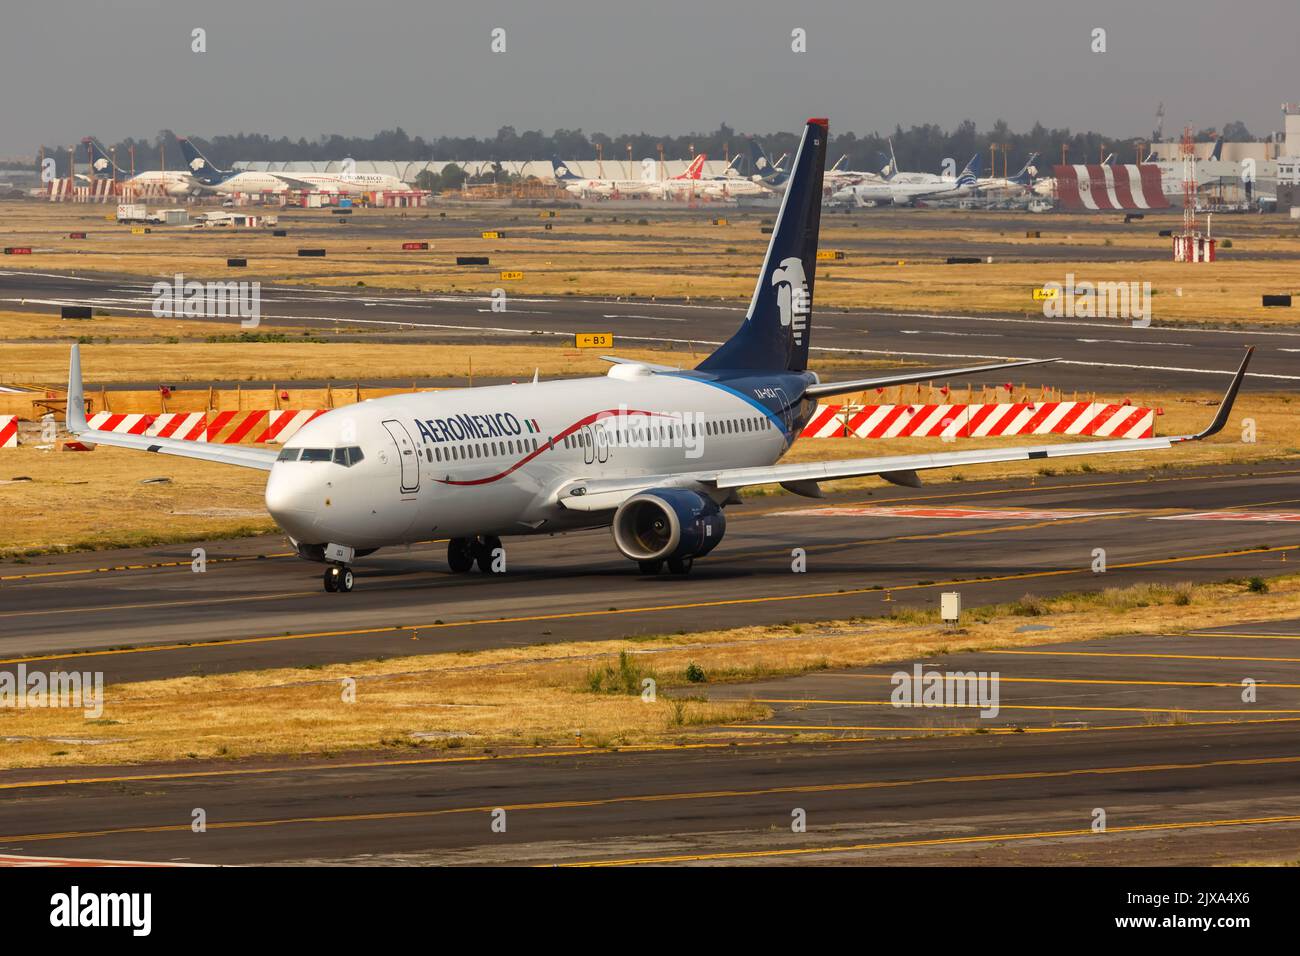 Ciudad de México, México - 14 de abril de 2022: Avión Boeing 737-800 de Aeroméxico en el aeropuerto de la Ciudad de México (MEX) en México. Foto de stock